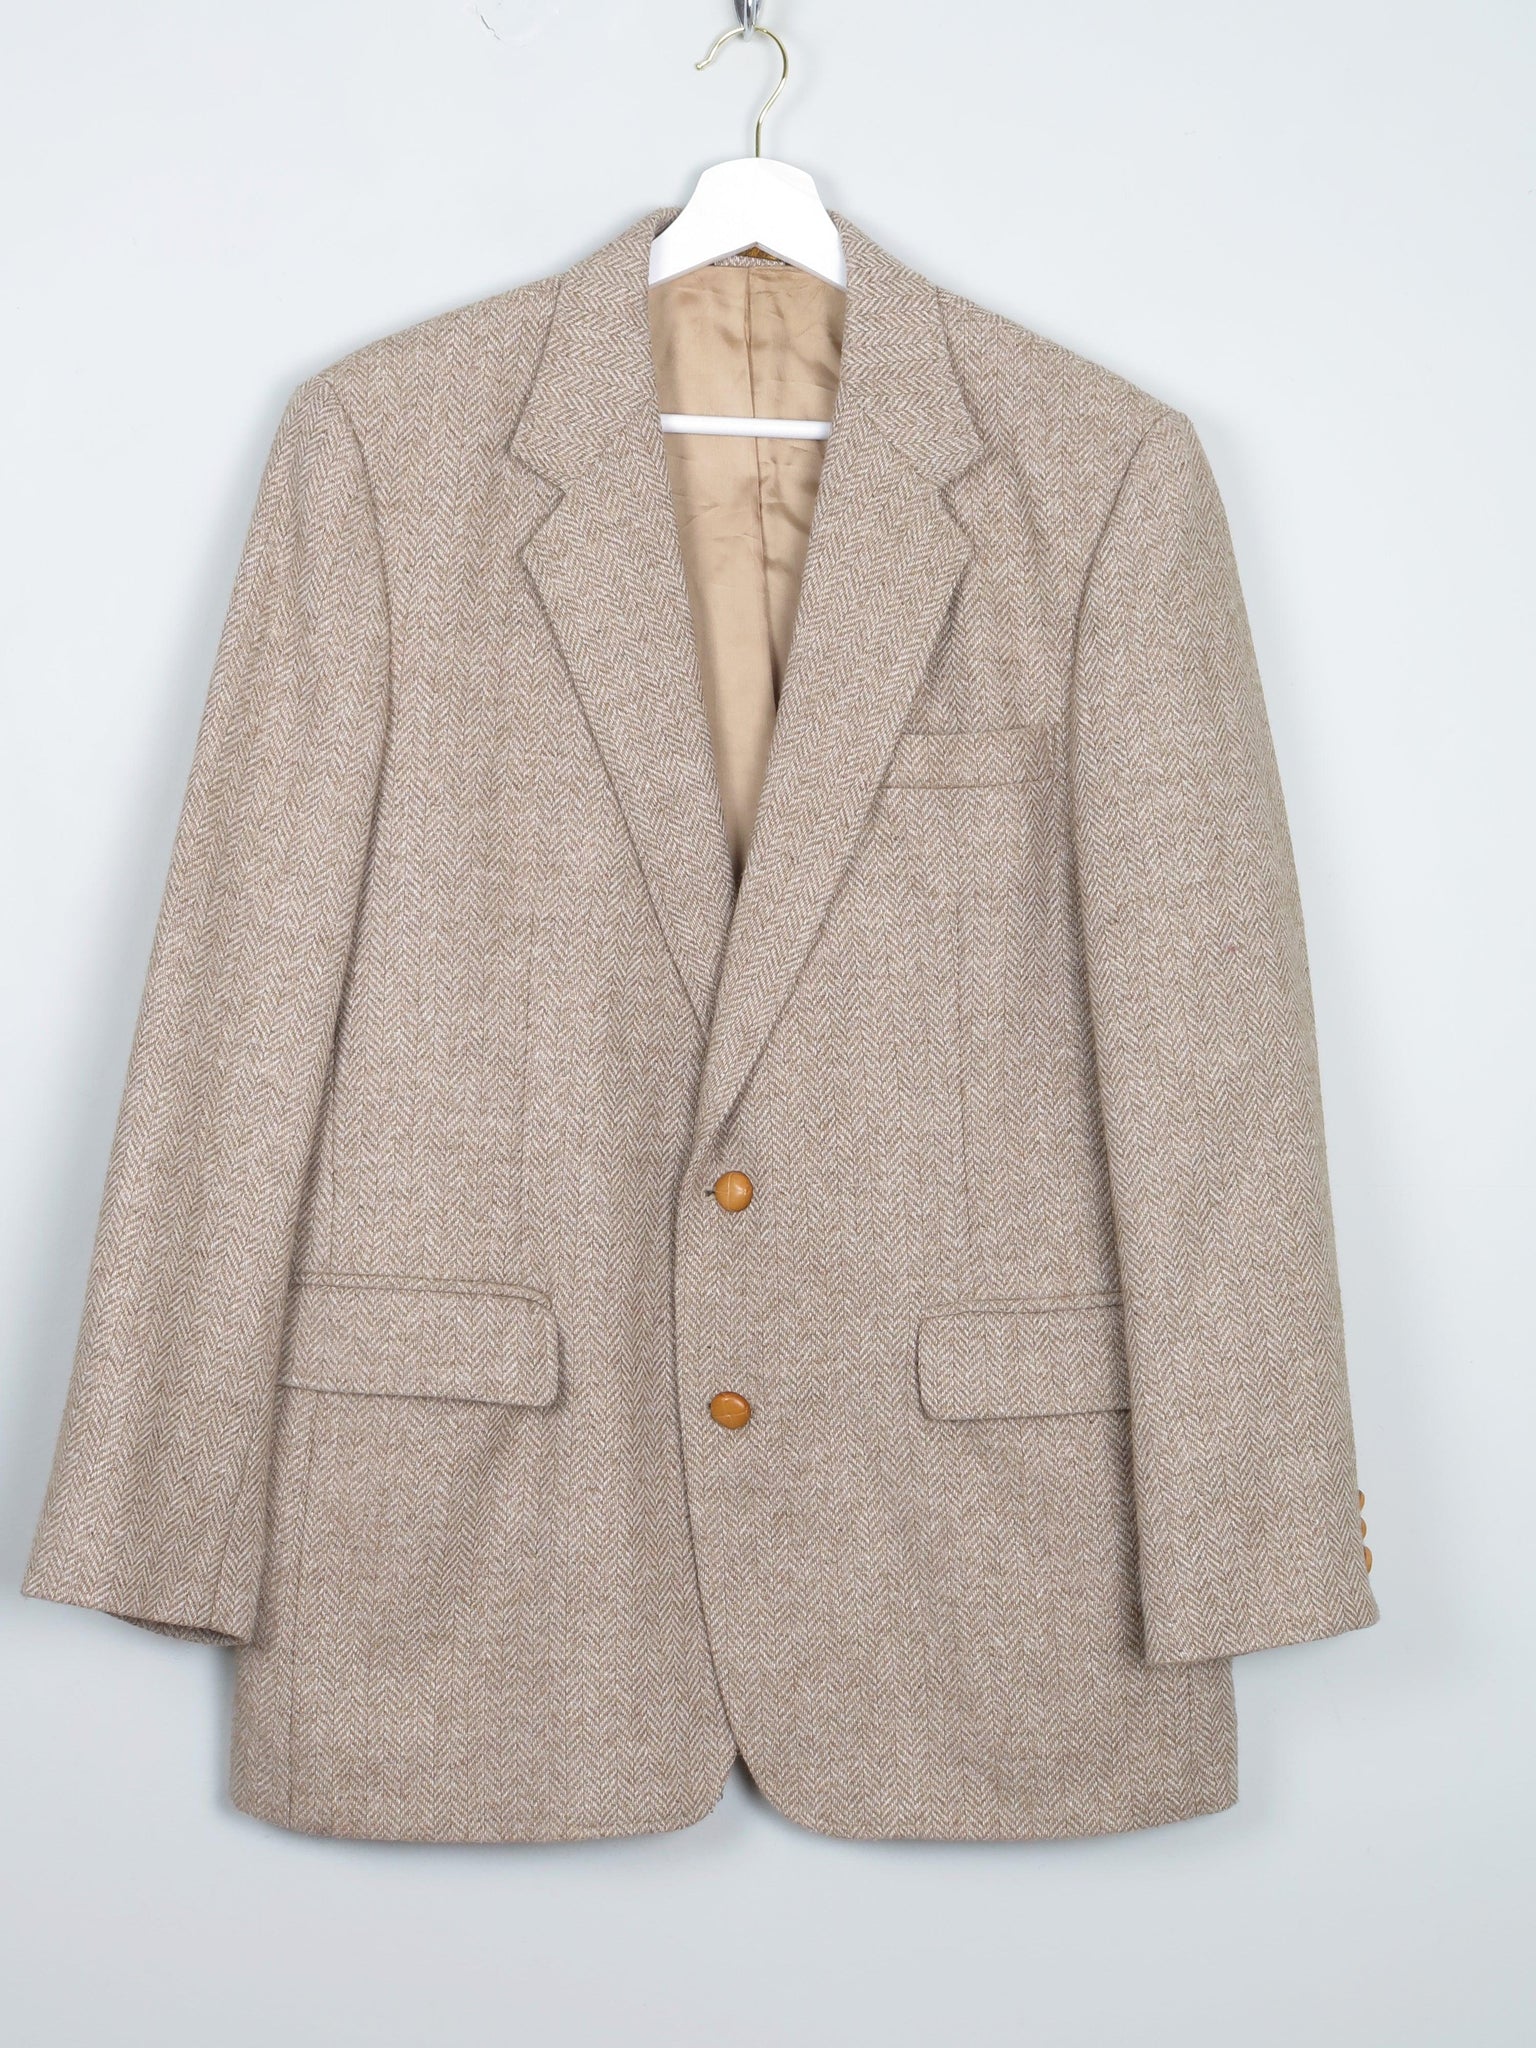 Men's Biscuit Beige Vintage Tweed Jacket 40/42" - The Harlequin